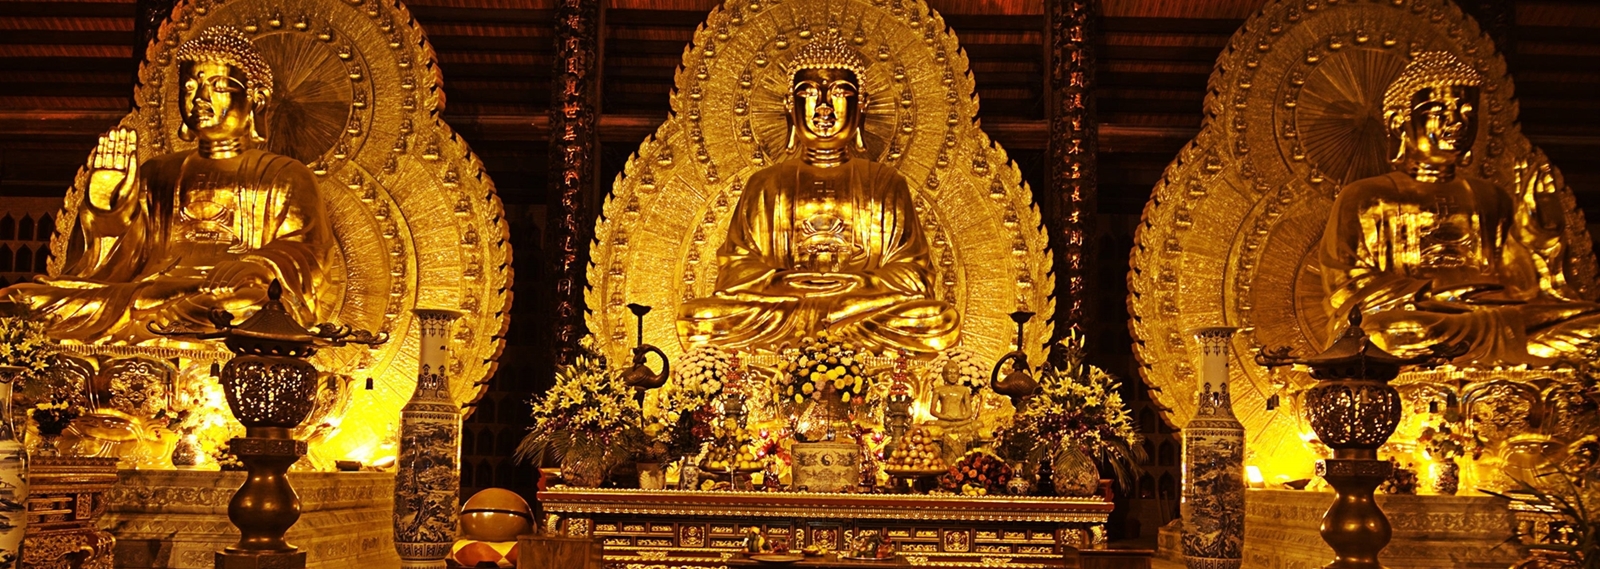 Bai Dinh Pagoda - Trang An 1 Day Tour